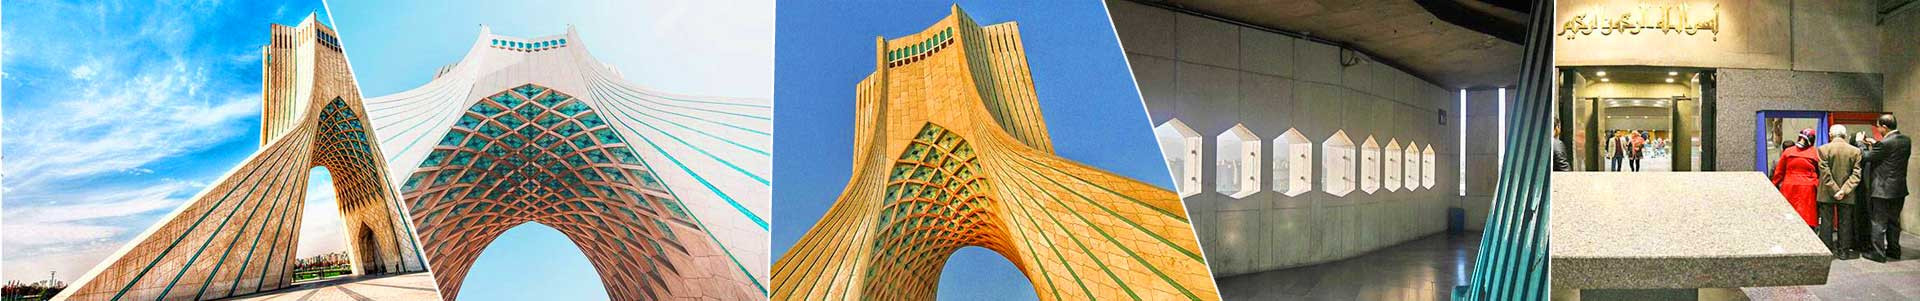 بهترین خرید برج آزادی تهران با بیشترین درصد تخفیف در قیمت - جدید